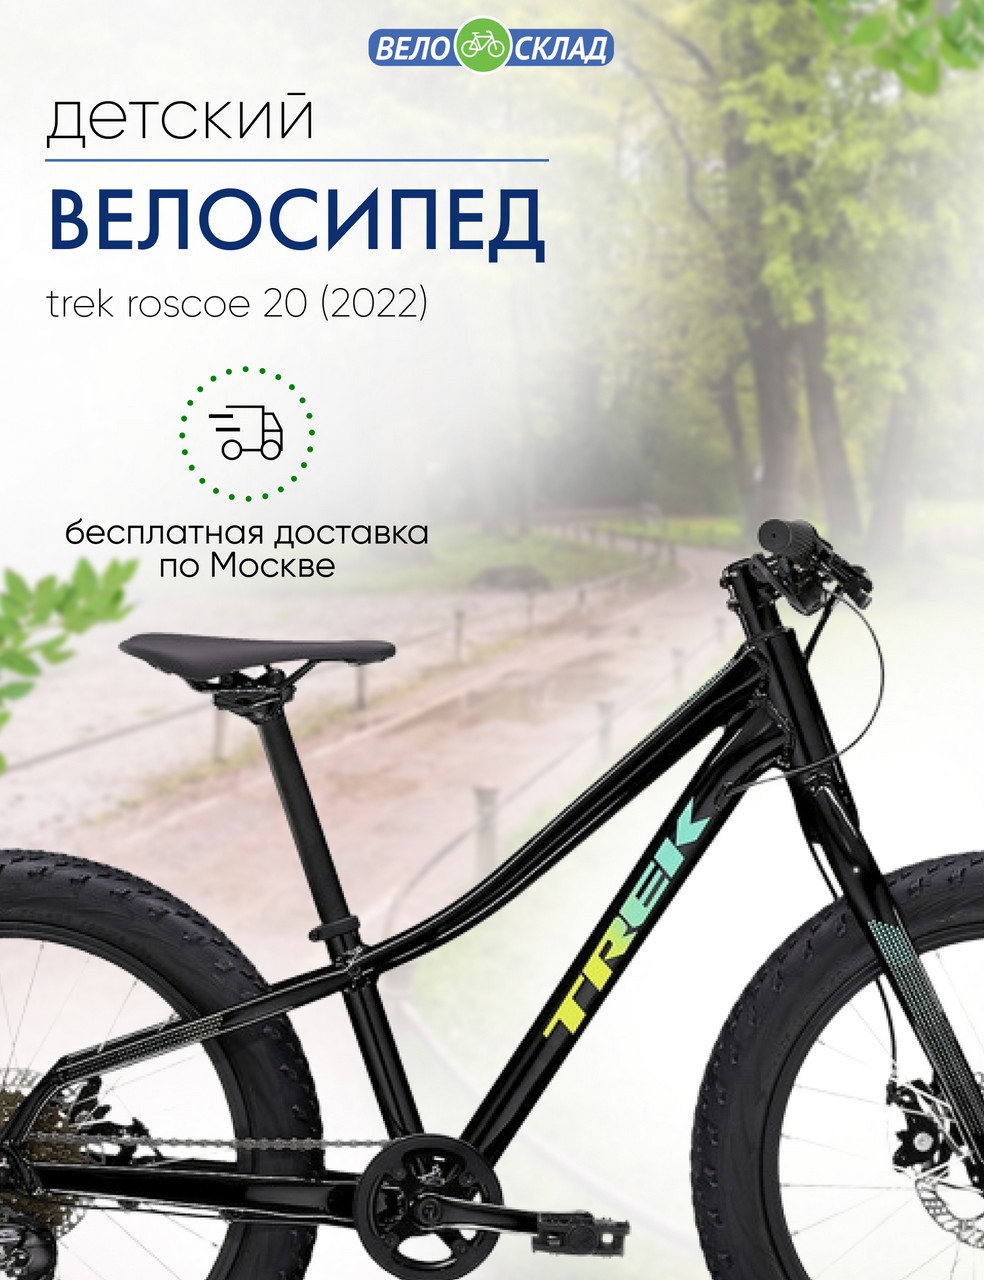 Детский велосипед Trek Roscoe 20, год 2022, цвет Черный